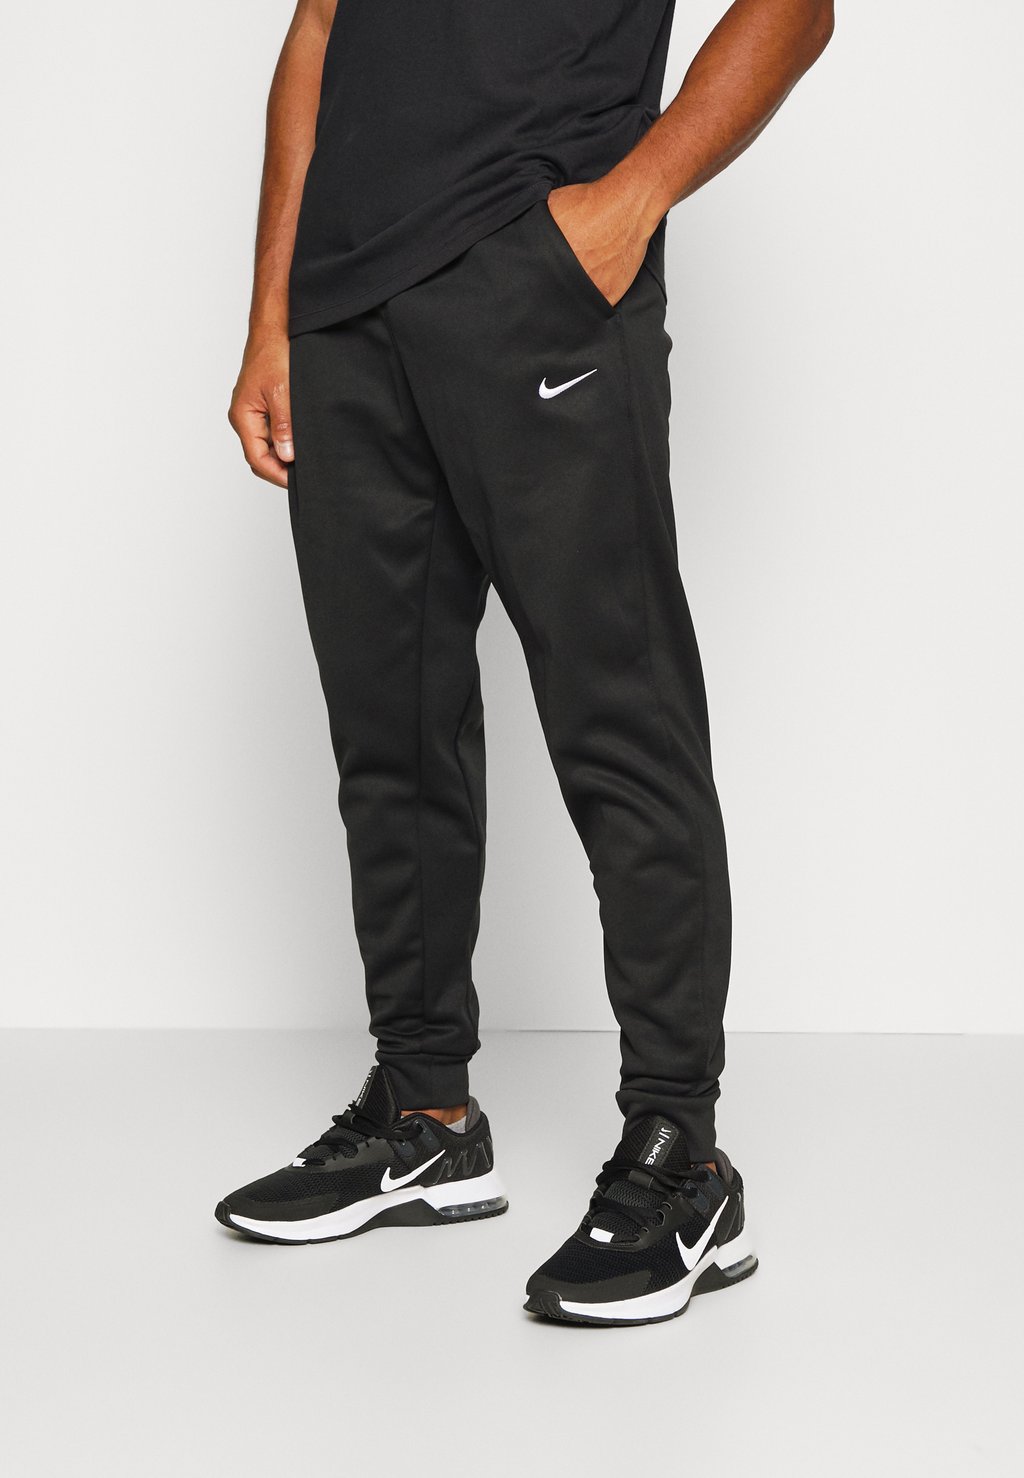 Спортивные брюки PANT TAPER Nike, черный/белый спортивные брюки pant taper nike черный белый